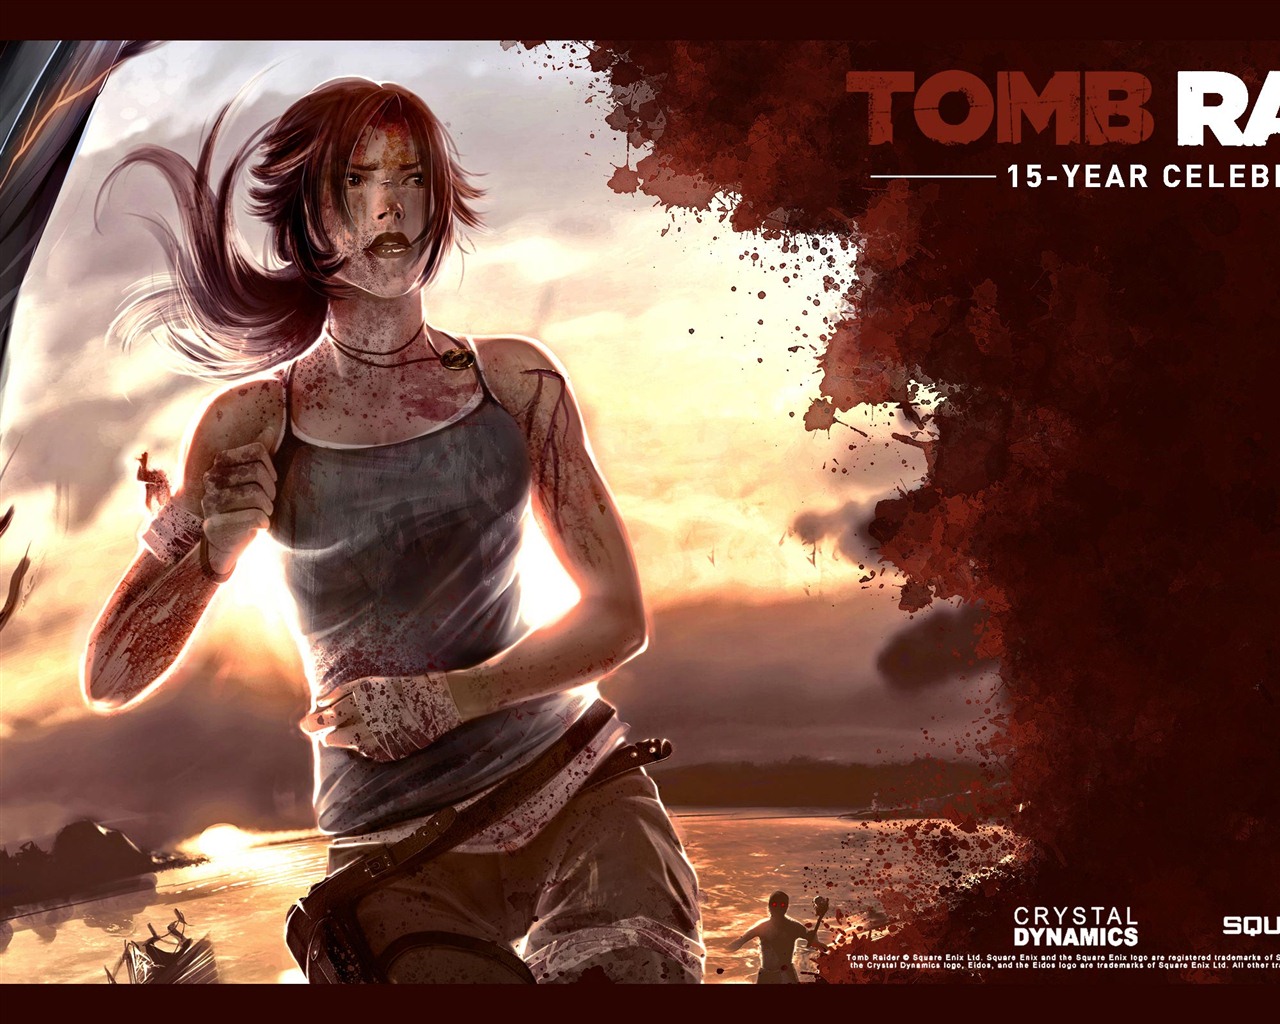 Tomb Raider 15-Year Celebration 古墓丽影15周年纪念版 高清壁纸16 - 1280x1024